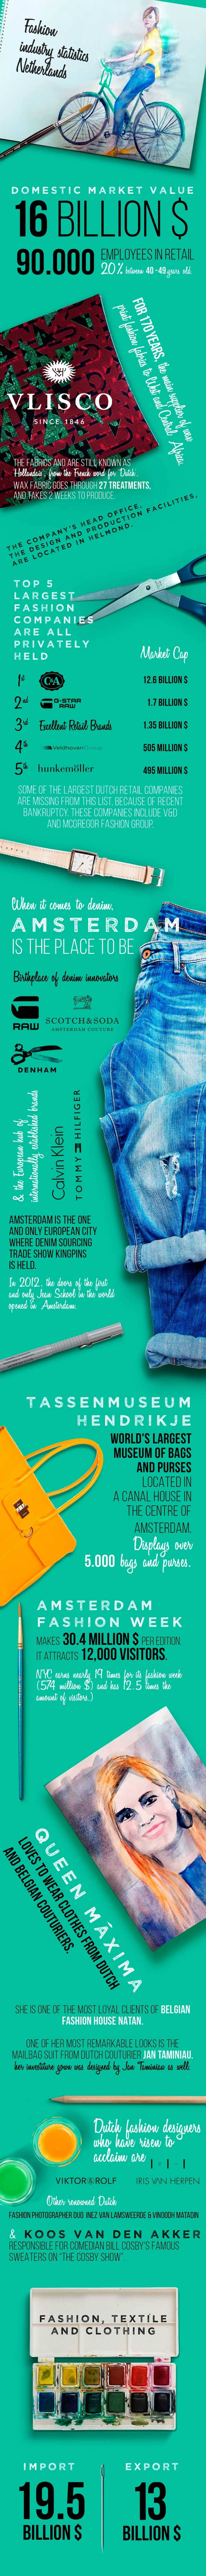 Statistiken der Modebranche - Infografik Teil 5: die Niederlande